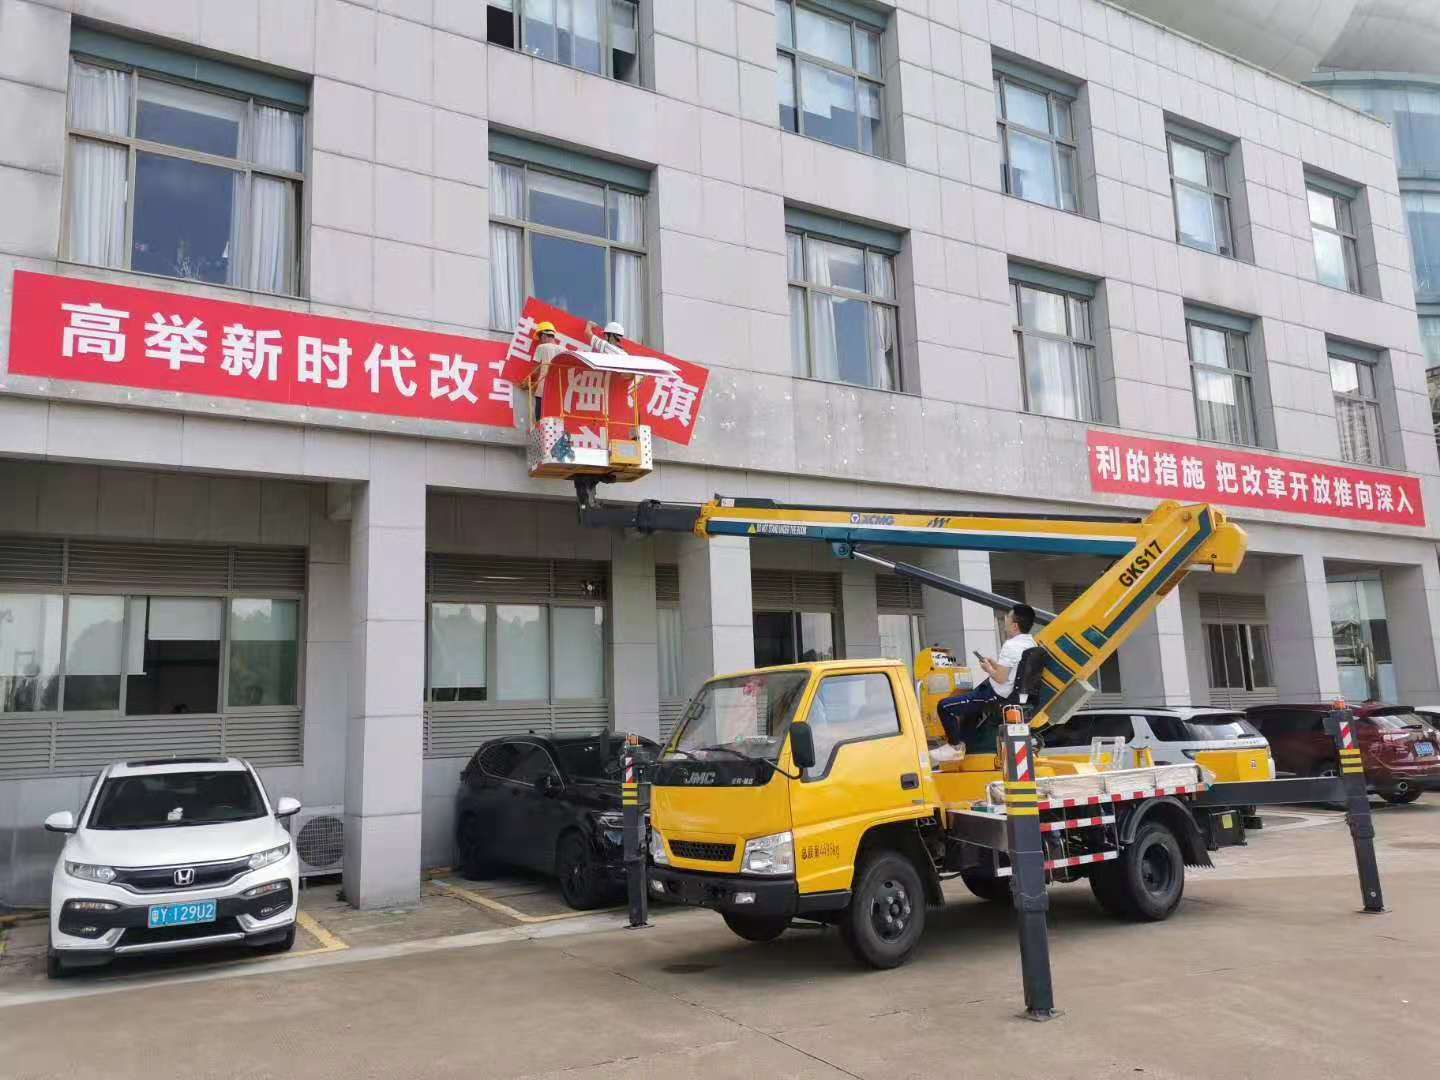 广州8吨吊车出租路灯车蜘蛛车 路灯车供应整个广东省 登高车租赁